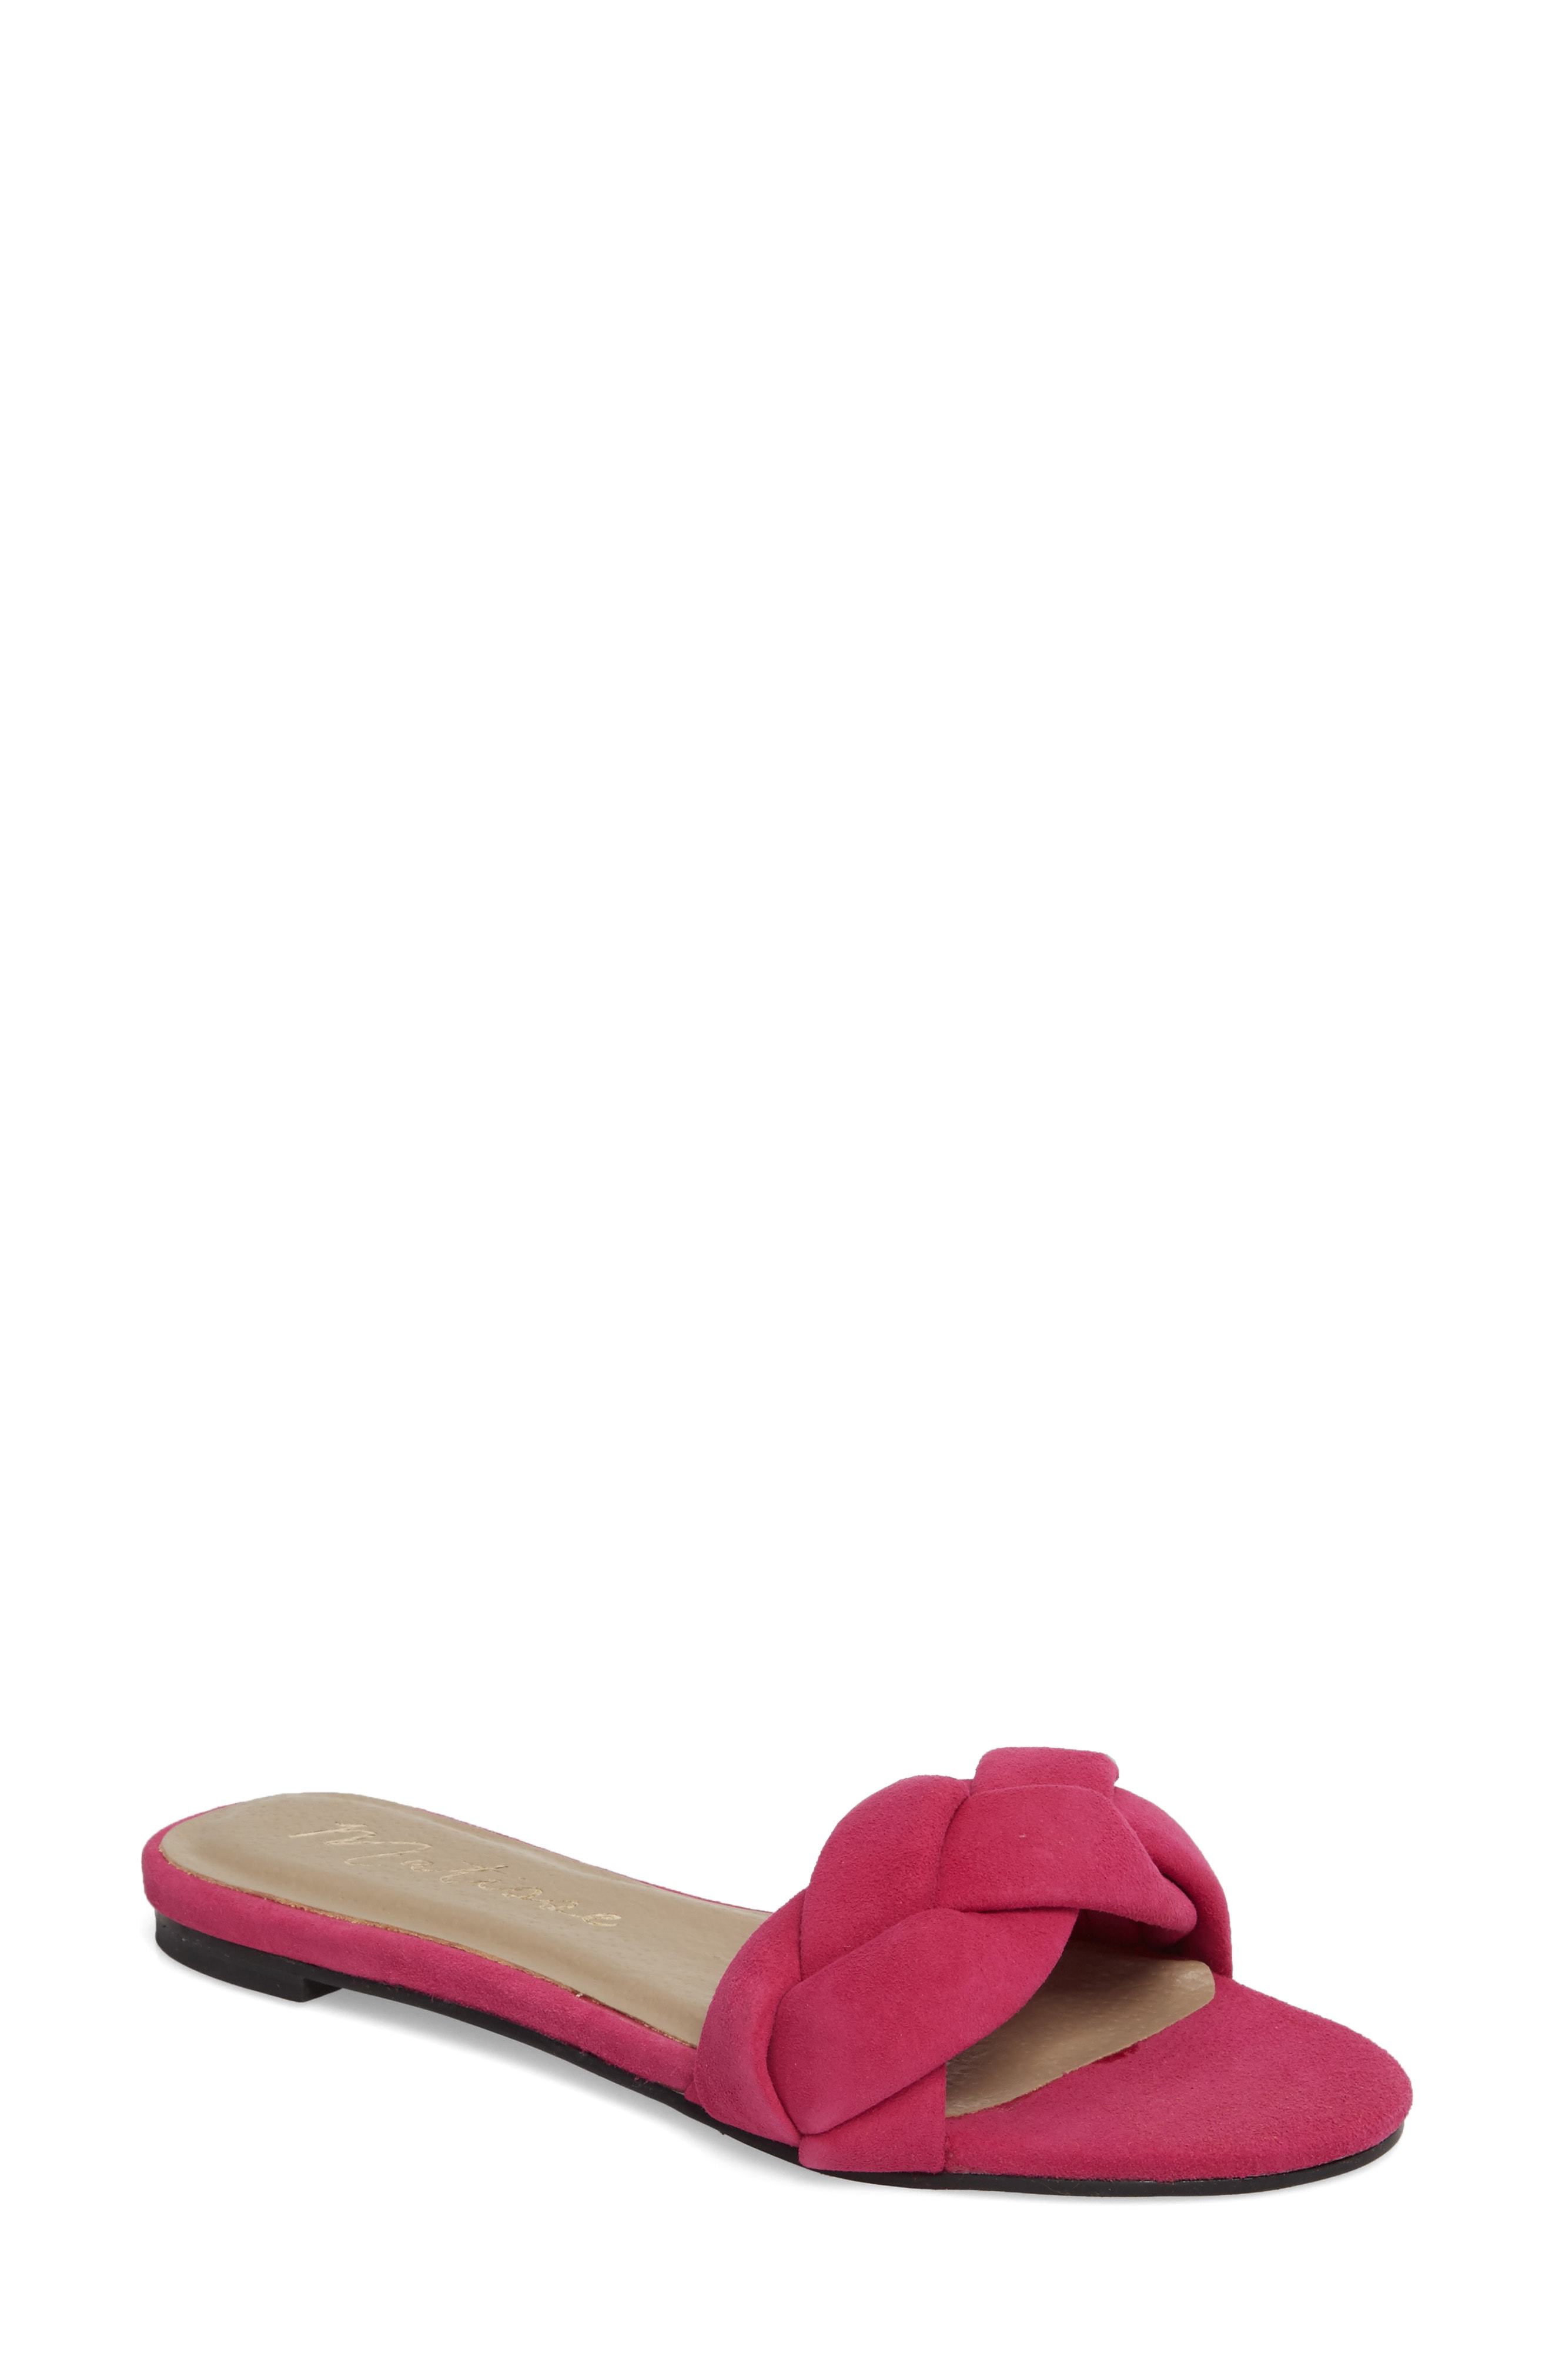 hot pink slide sandals